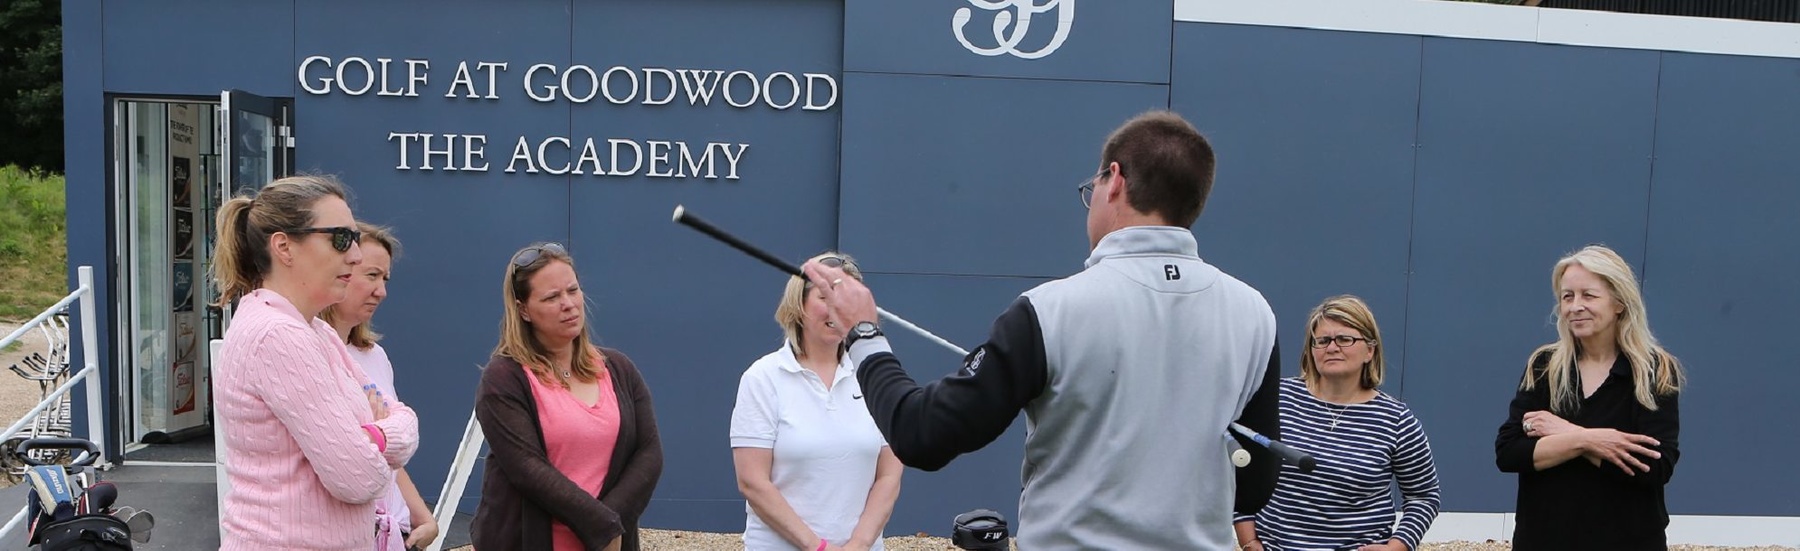 International Women’s Golf Day at Goodwood Golf Academy